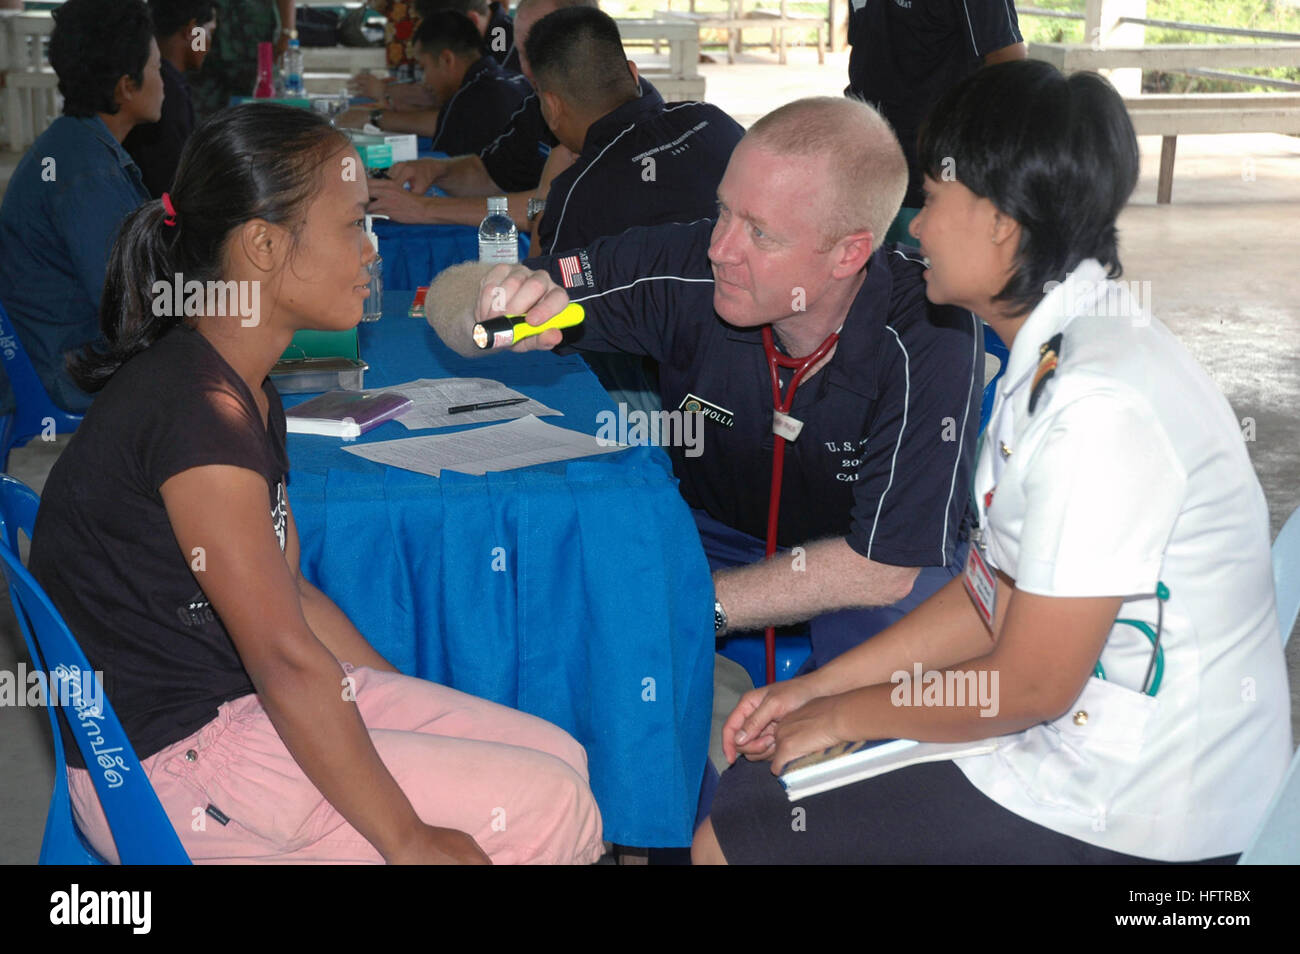 070619-N-7783B-003 DIVIETO SAMSAN, Thailandia (19 giugno 2007) - Cmdr. Warren Woollin, assegnato alla salute operativa Unità di supporto distacco Golf Grandi Laghi, esegue una routine medical exam su un cittadino tailandese, con l'assistenza di un Royal Thai Army infermiera durante una visita medica di azione civile progetto (MEDCAP) presso un villaggio locale durante l'esercizio la cooperazione a galla la prontezza e la formazione (Carati) 2007. Carato è prevista una serie di accordi bilaterali di formazione militare esercizi con diversi Southeast Asia nazioni progettate per migliorare l'interoperabilità dei rispettivi servizi marittimi. Stati Uniti Foto di Marina di Massa Communic Foto Stock